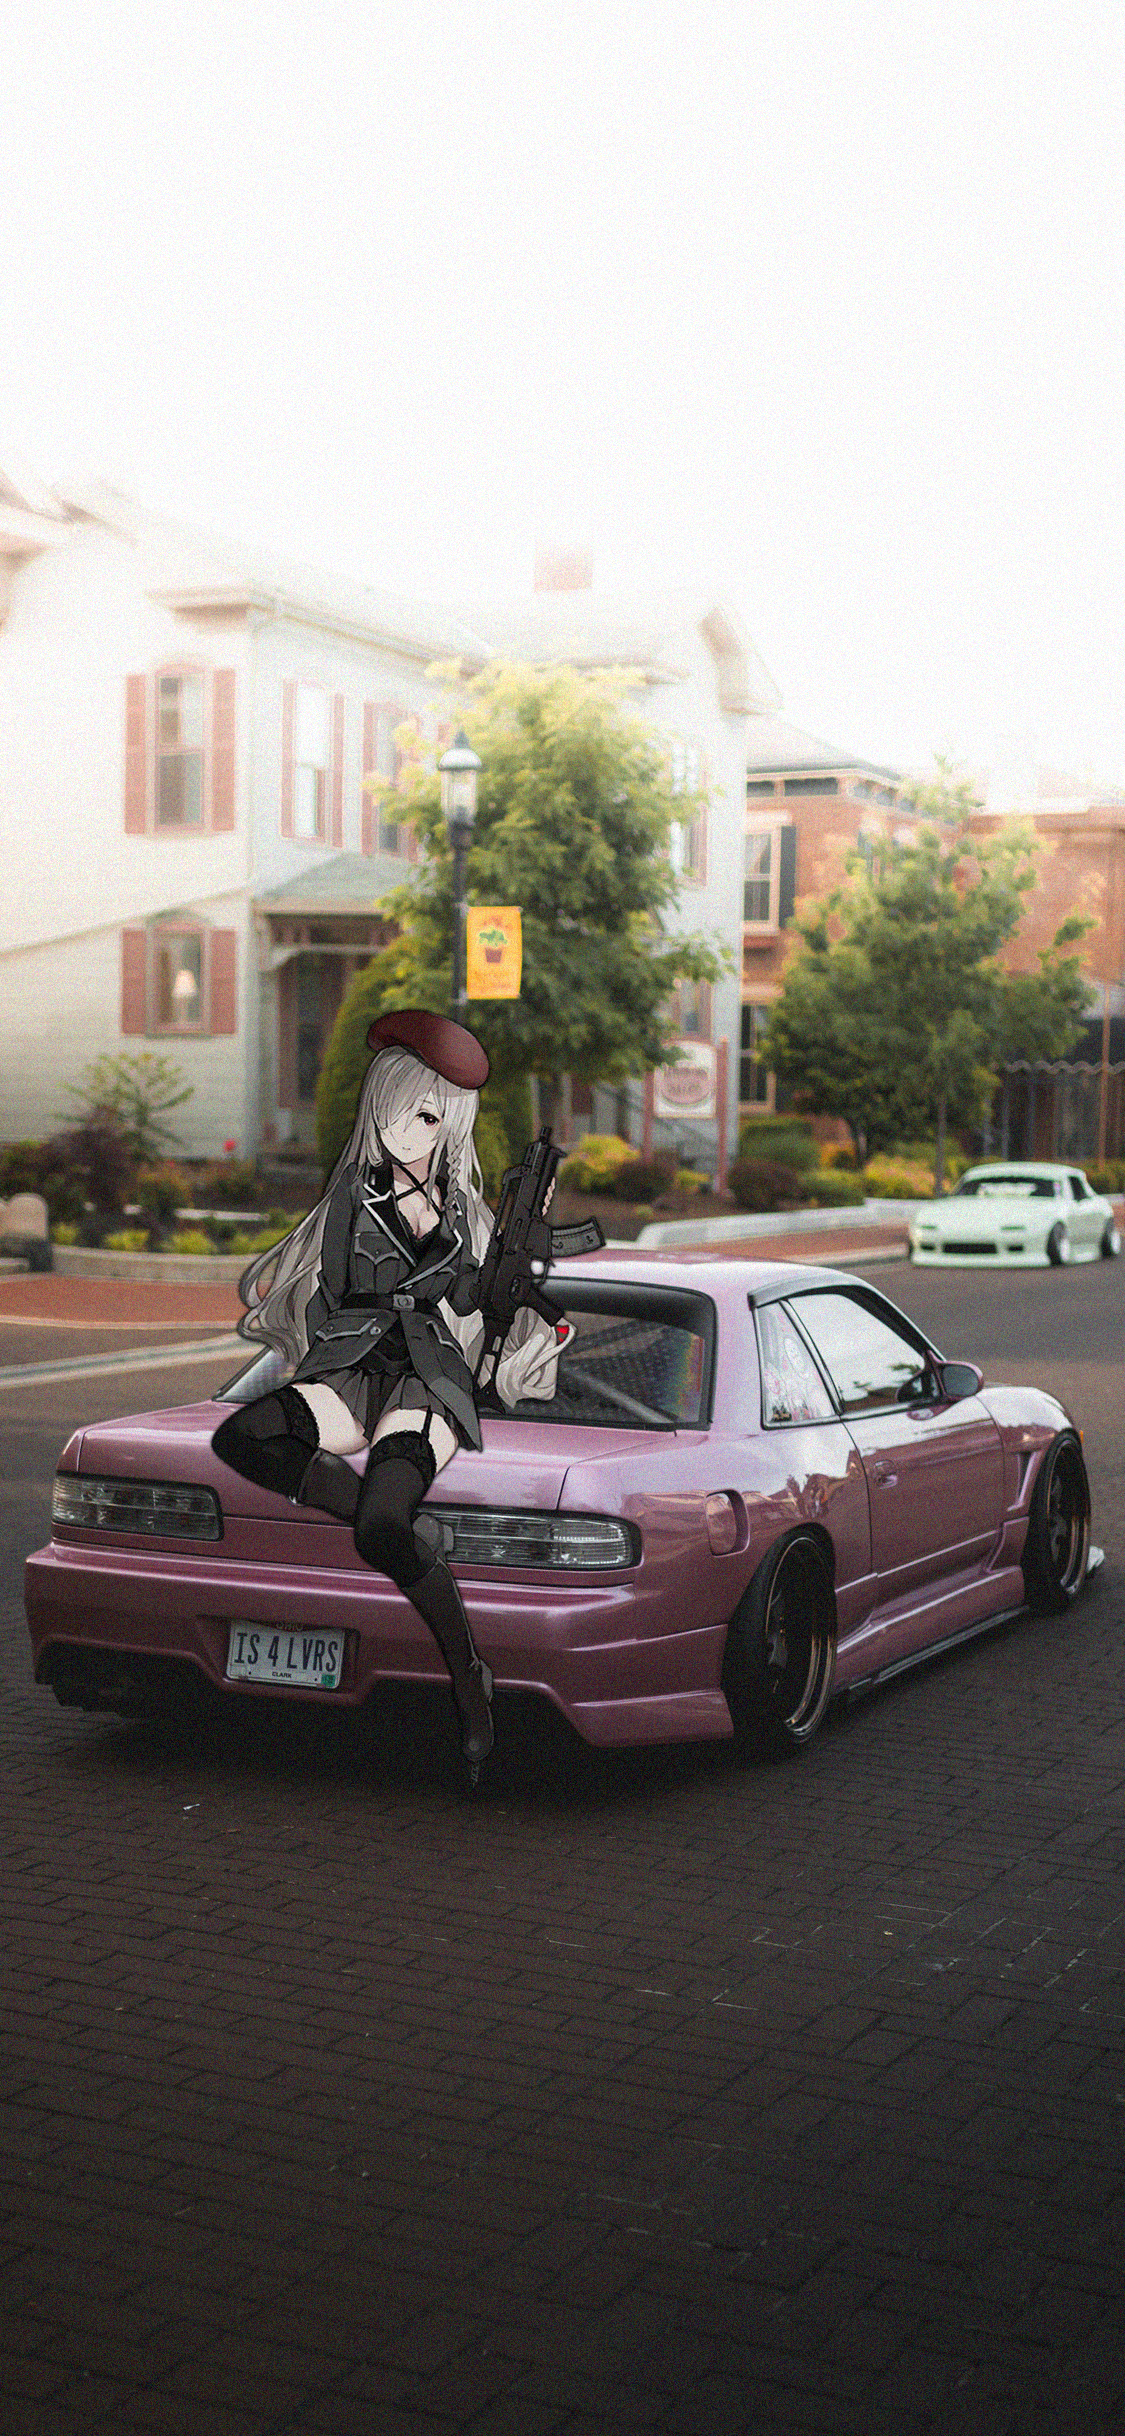 Anime Girls With Guns Nissan Silvia S13 Japanese Cars 90s Cars Car Anime Girls 1125x2436